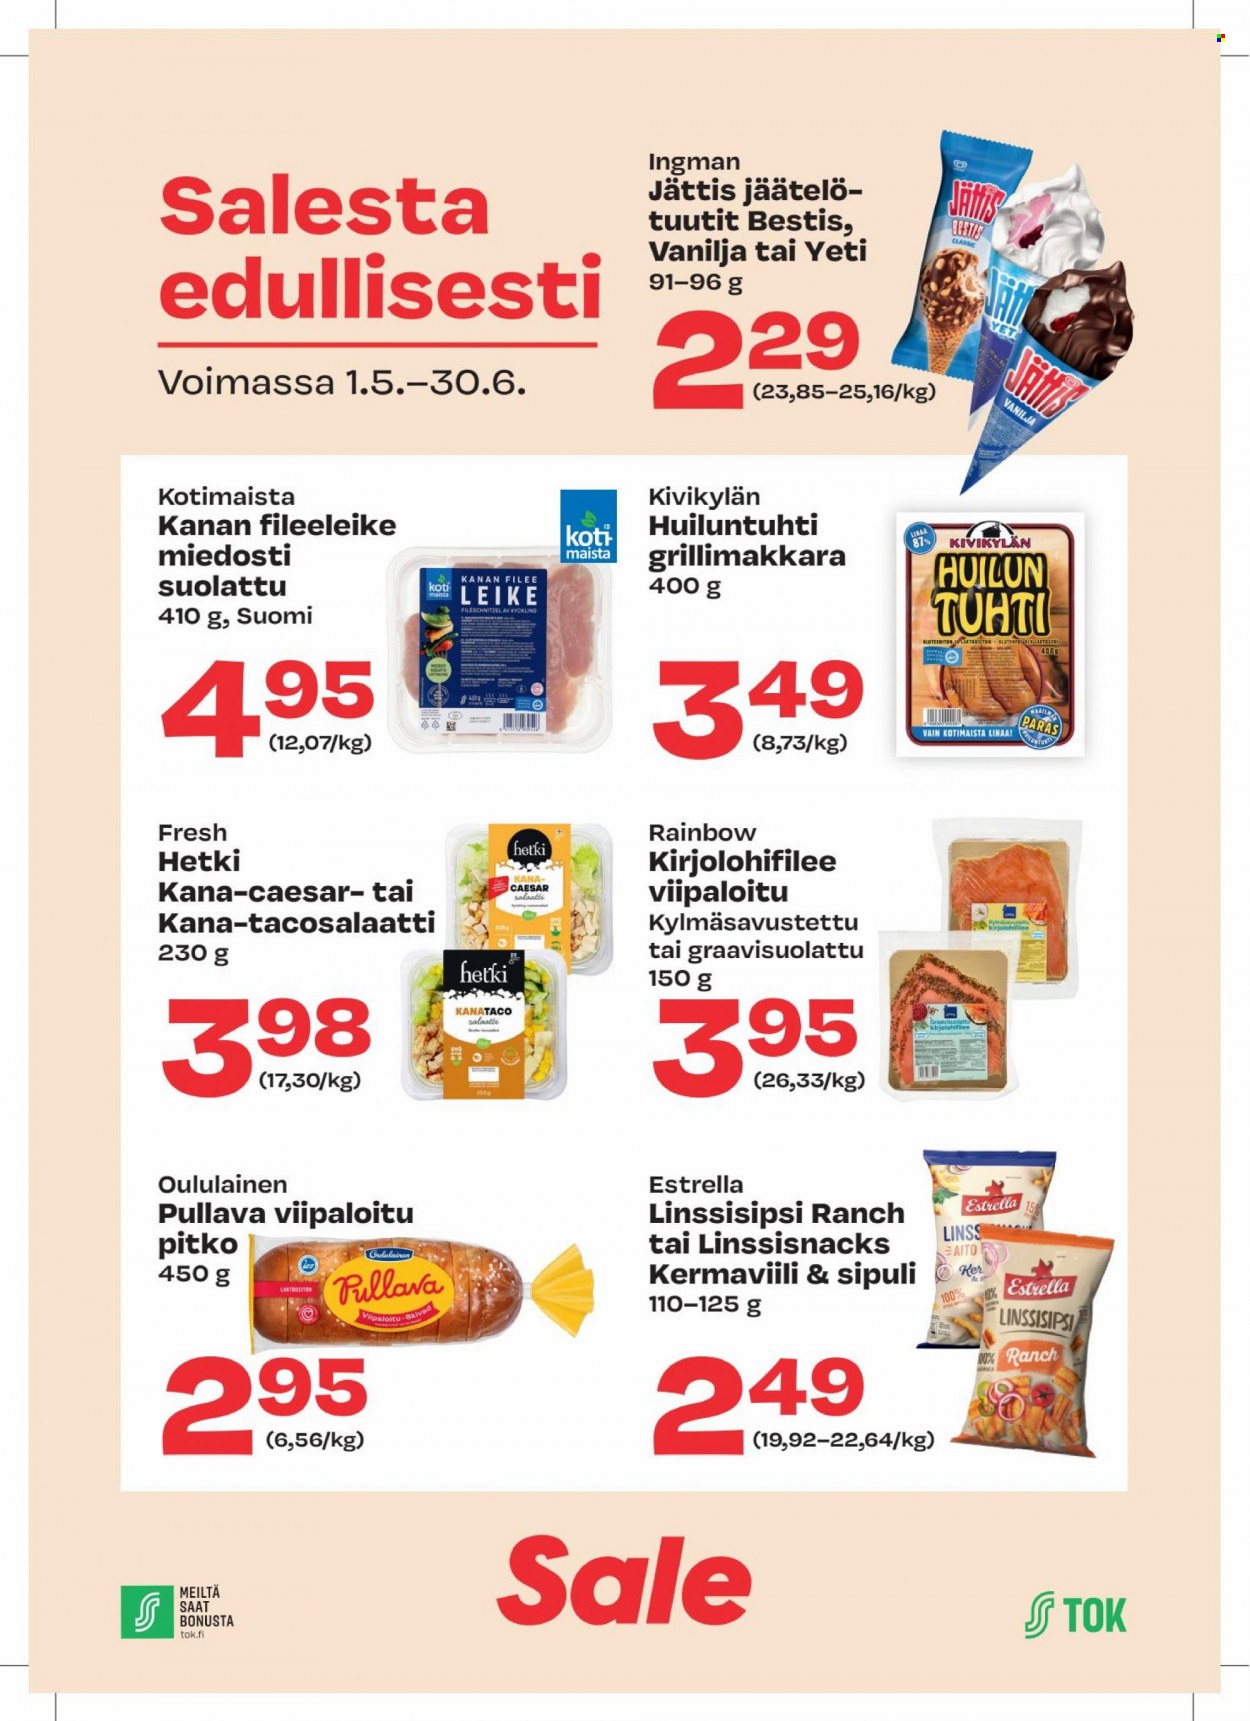 thumbnail - Sale tarjoukset  - 01.05.2022 - 30.06.2022 - Tarjoustuotteet - pitko, Oululainen, Pullava, sipuli, kanan, kanan fileeleike, jäätelö, vanilja. Sivu 1.